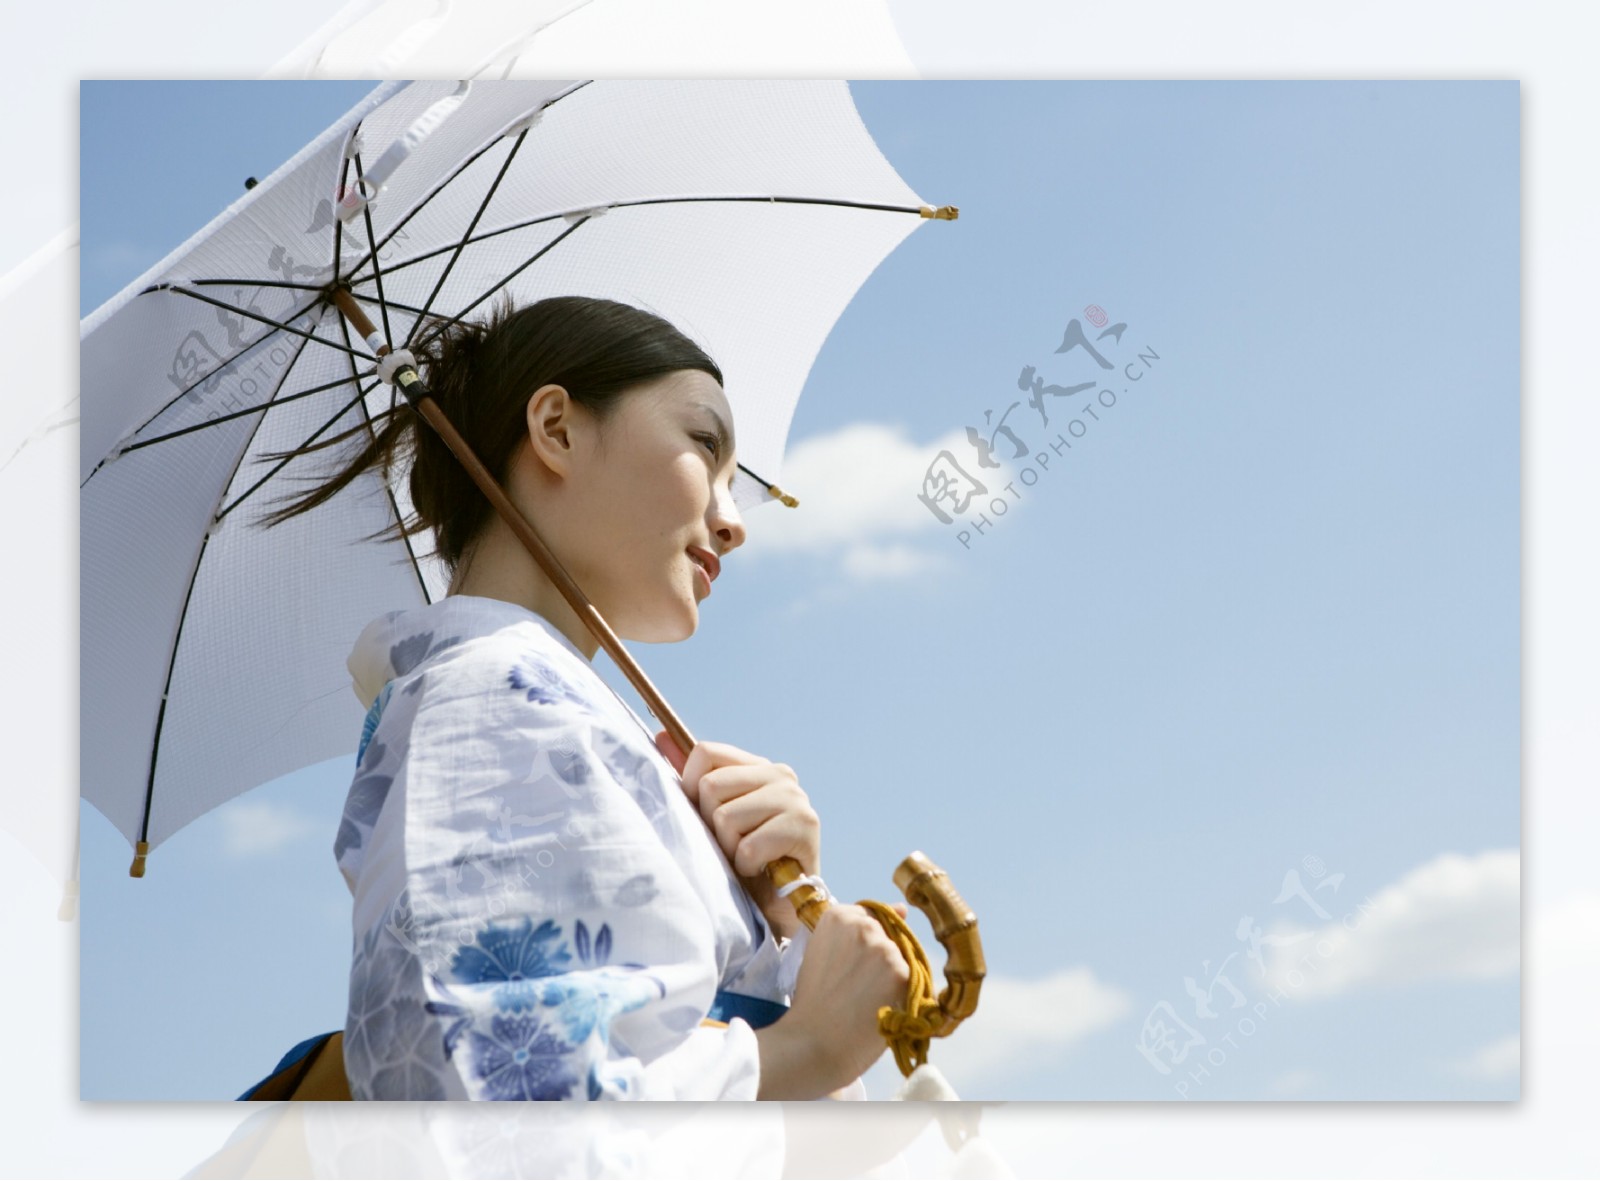 打伞的日本美女图片